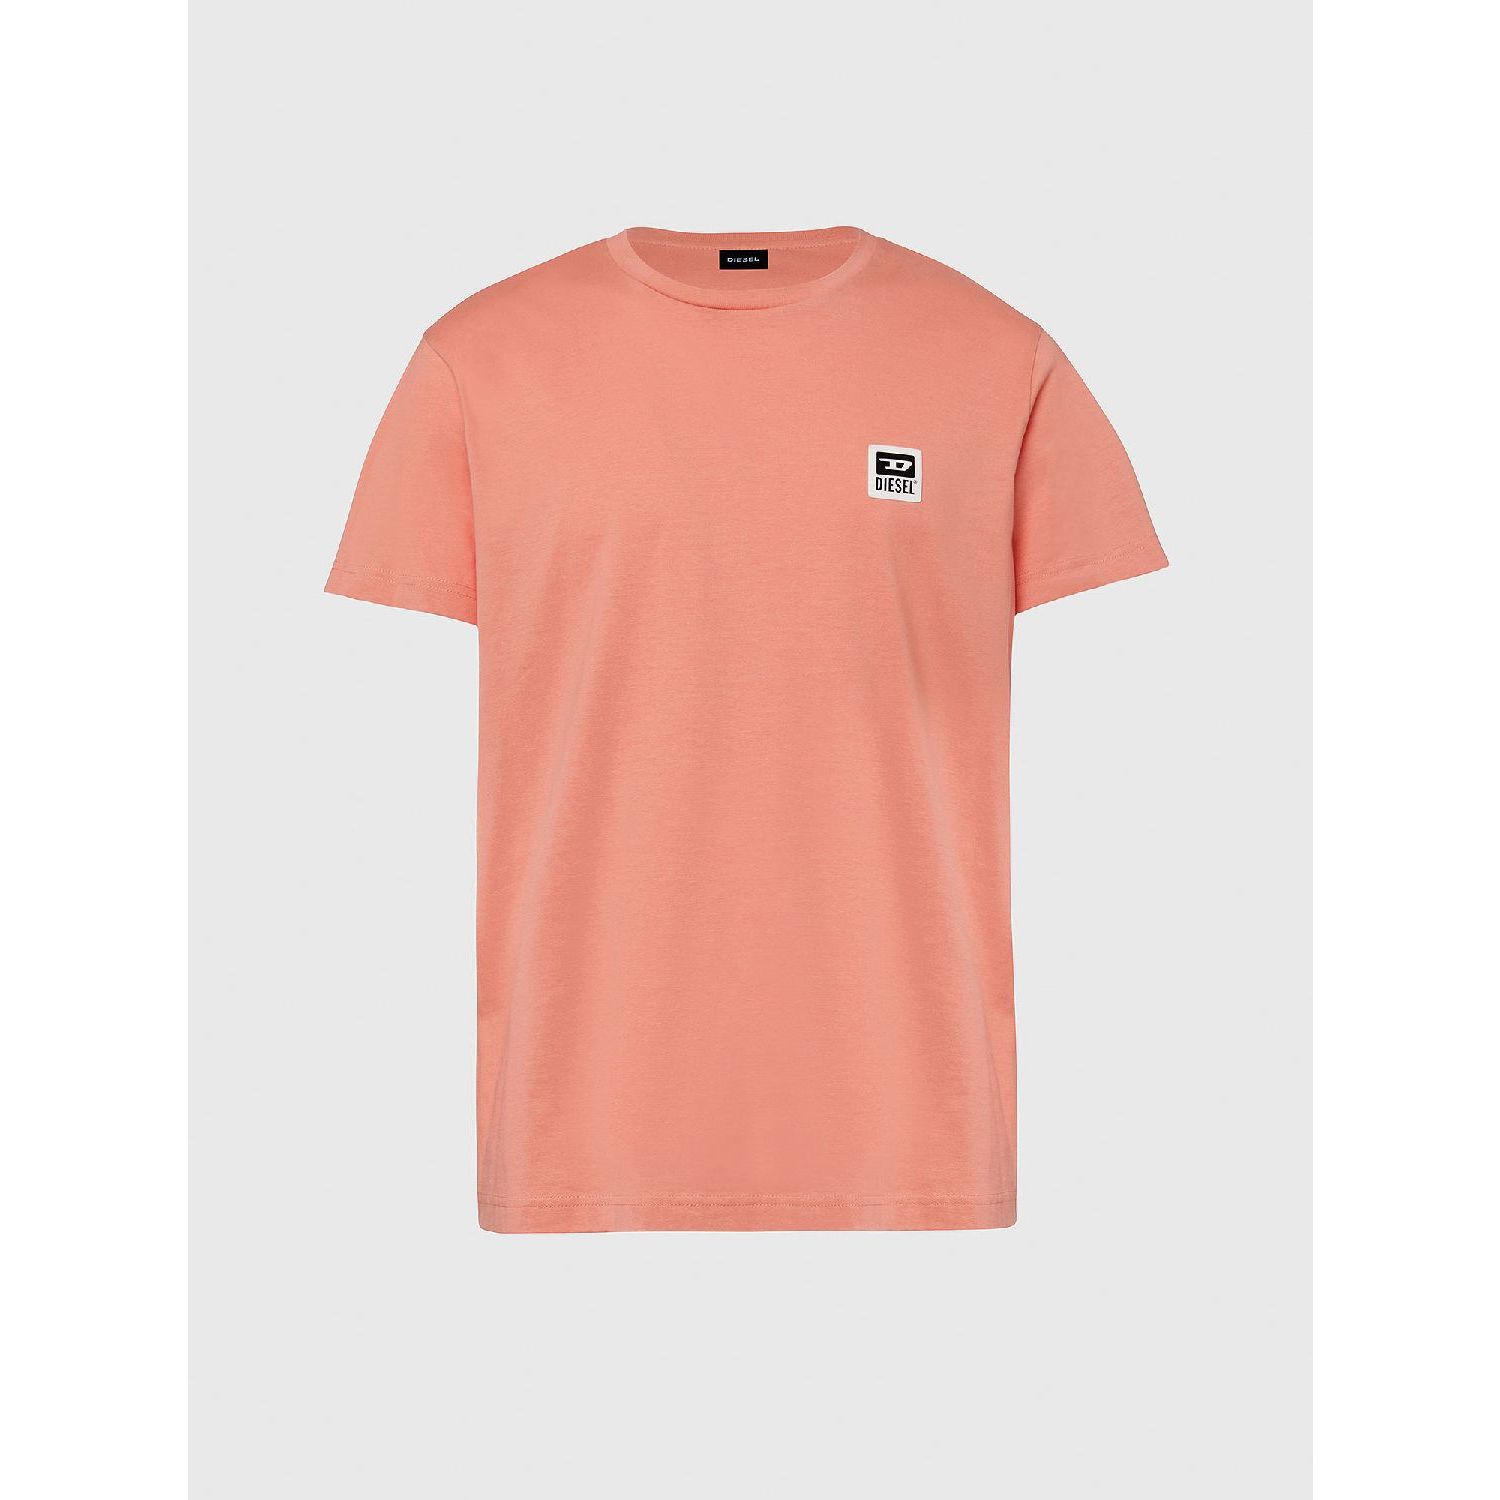 Diesel t-diego-k30 maglietta t-shirt orange